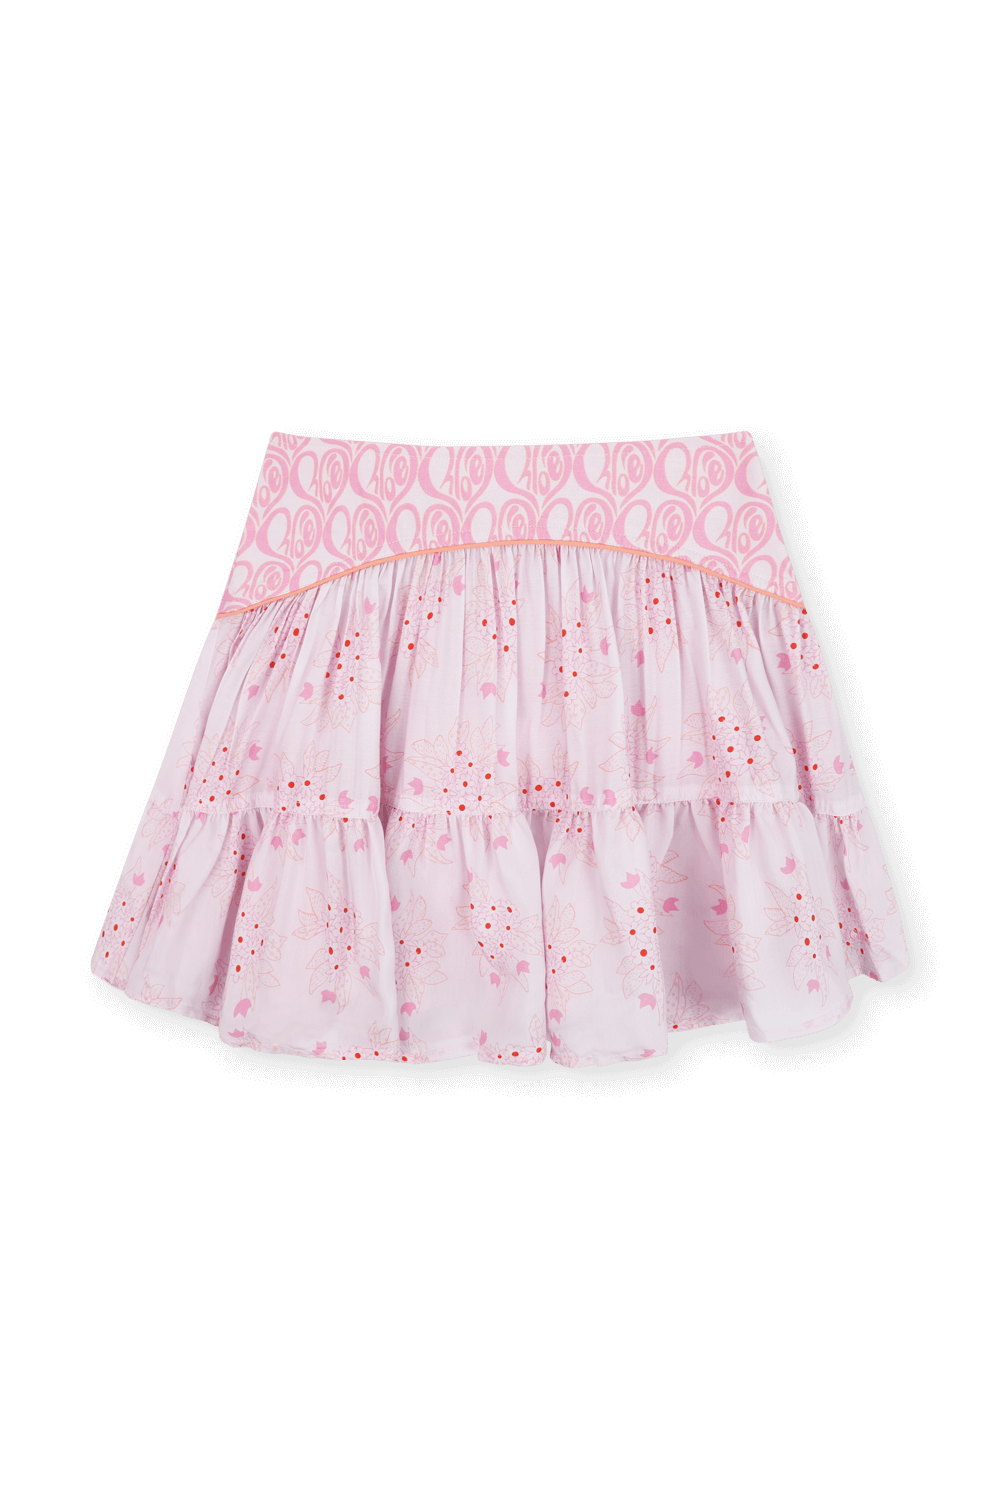 גילאי 6-12 חצאית מיני פרחונית עם חגורת לוגו CHLOE KIDS